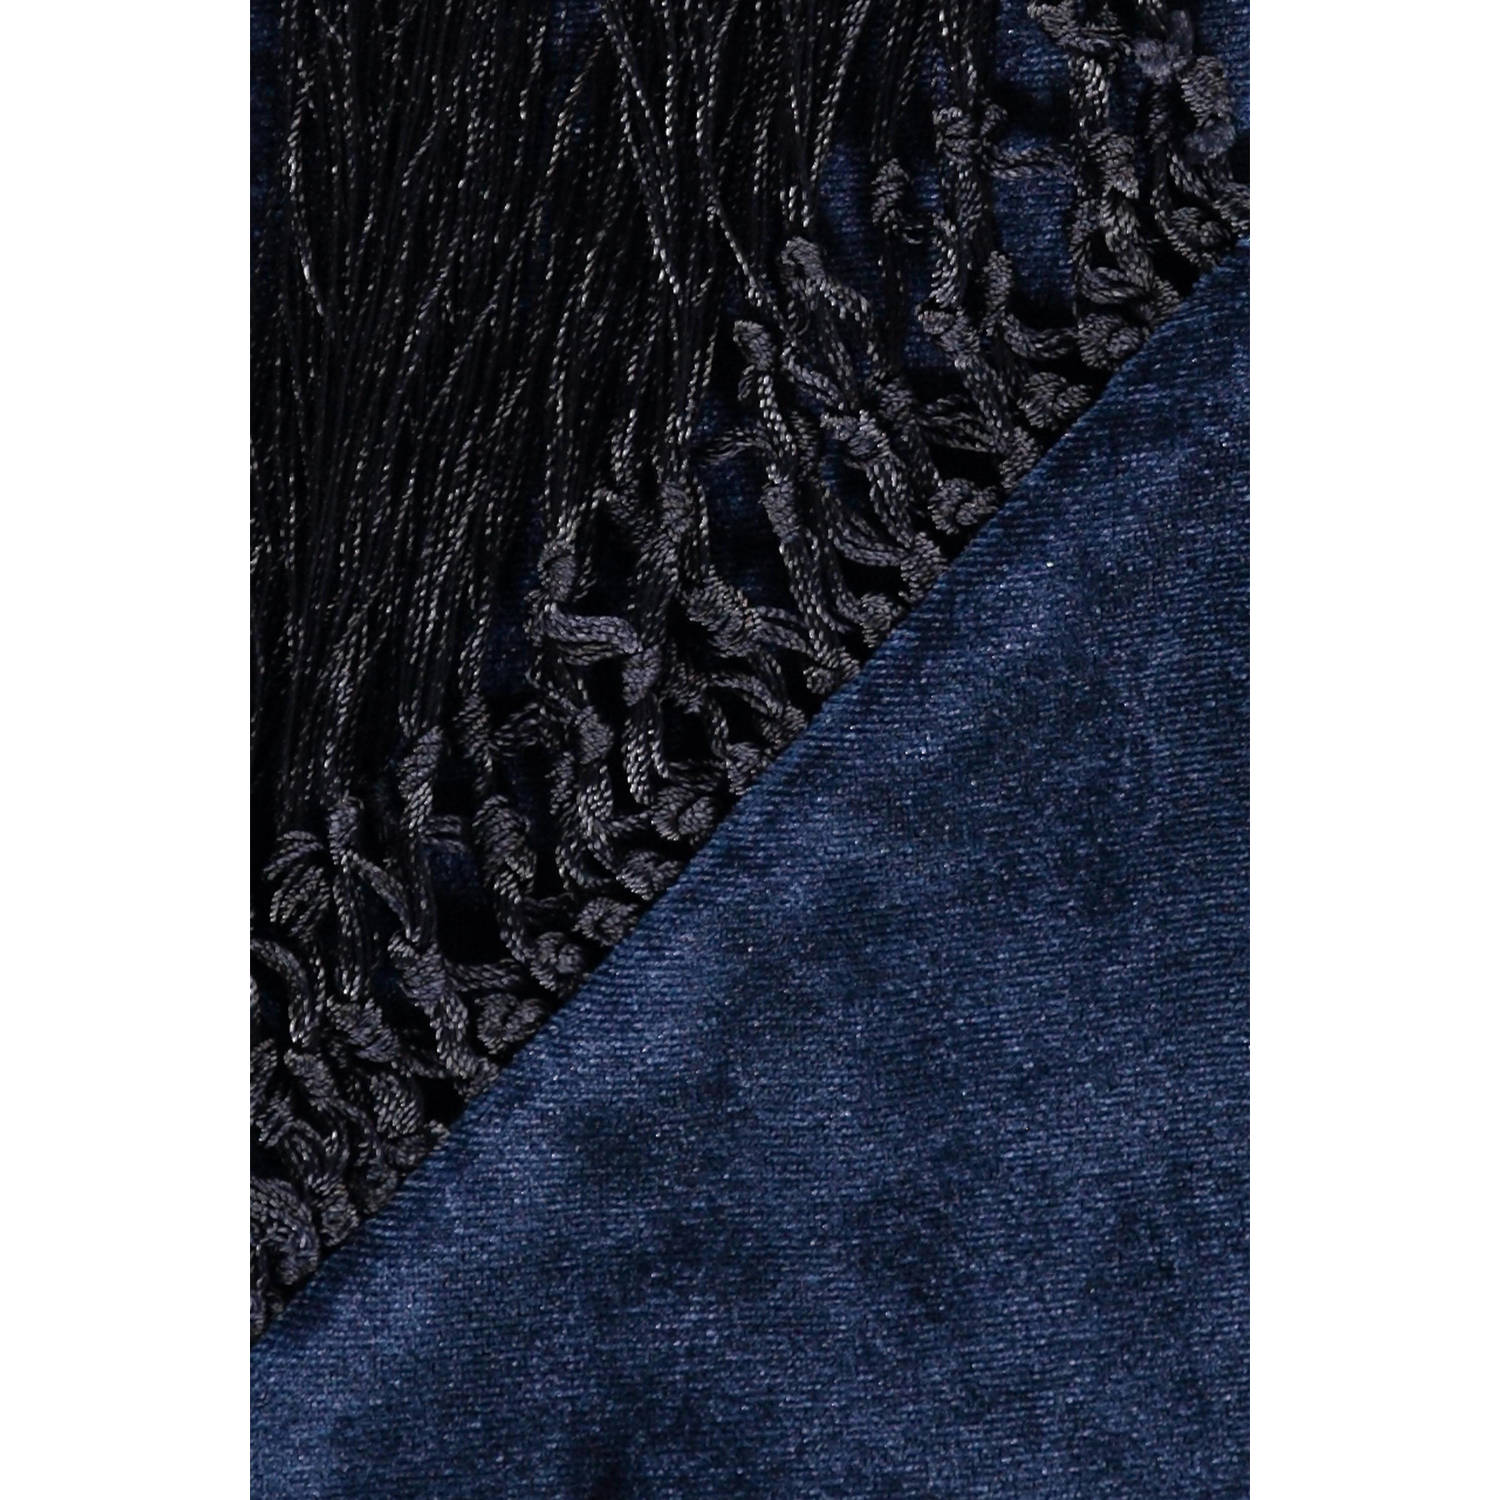 Expresso fluwelen sjaal donkerblauw